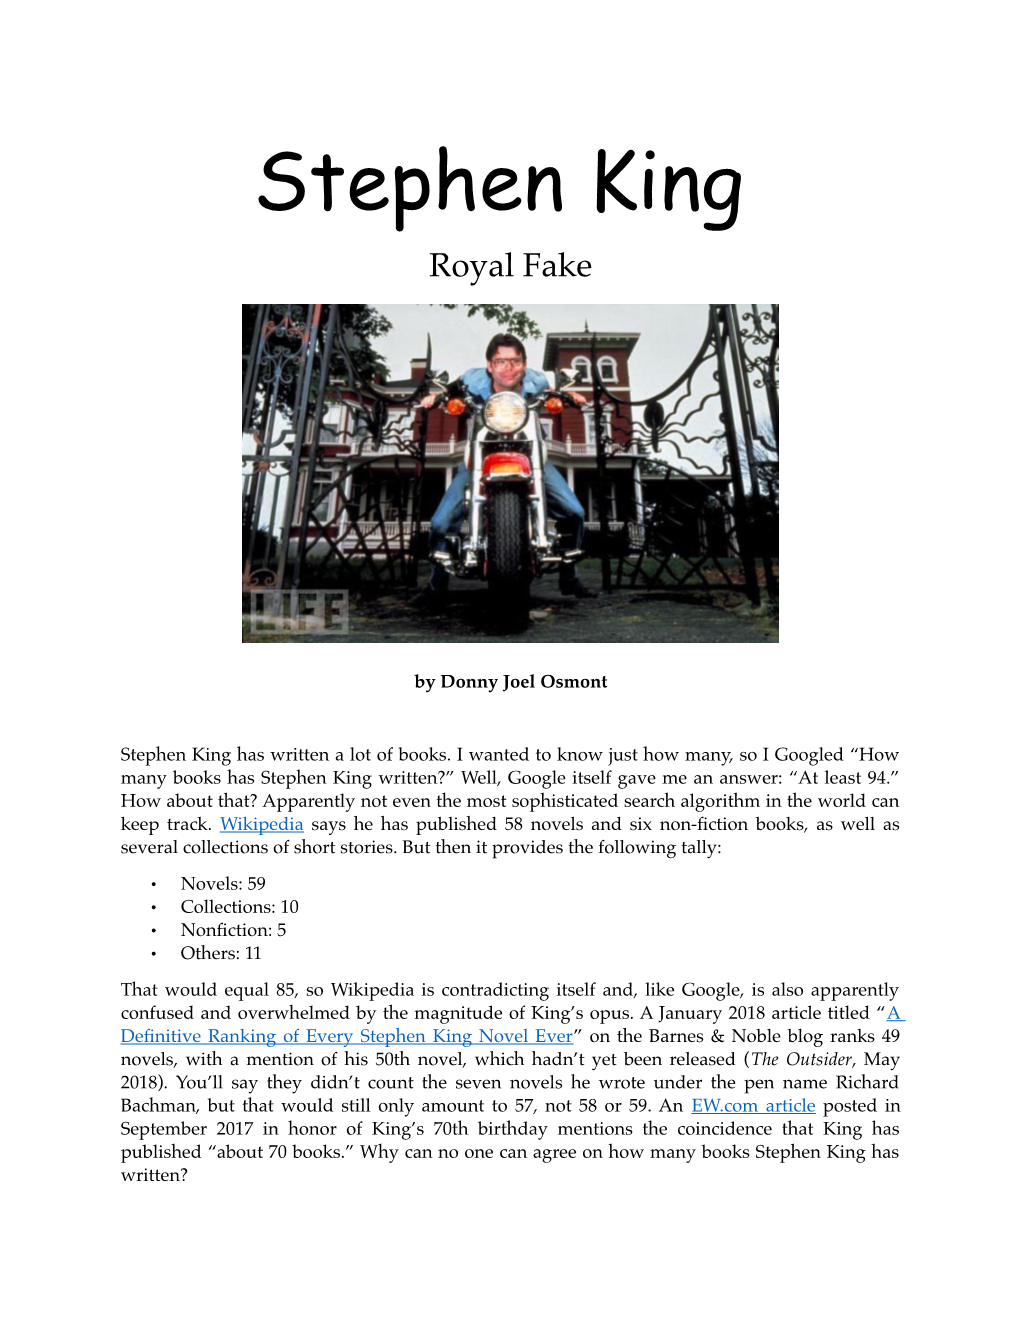 Stephen King Royal Fake